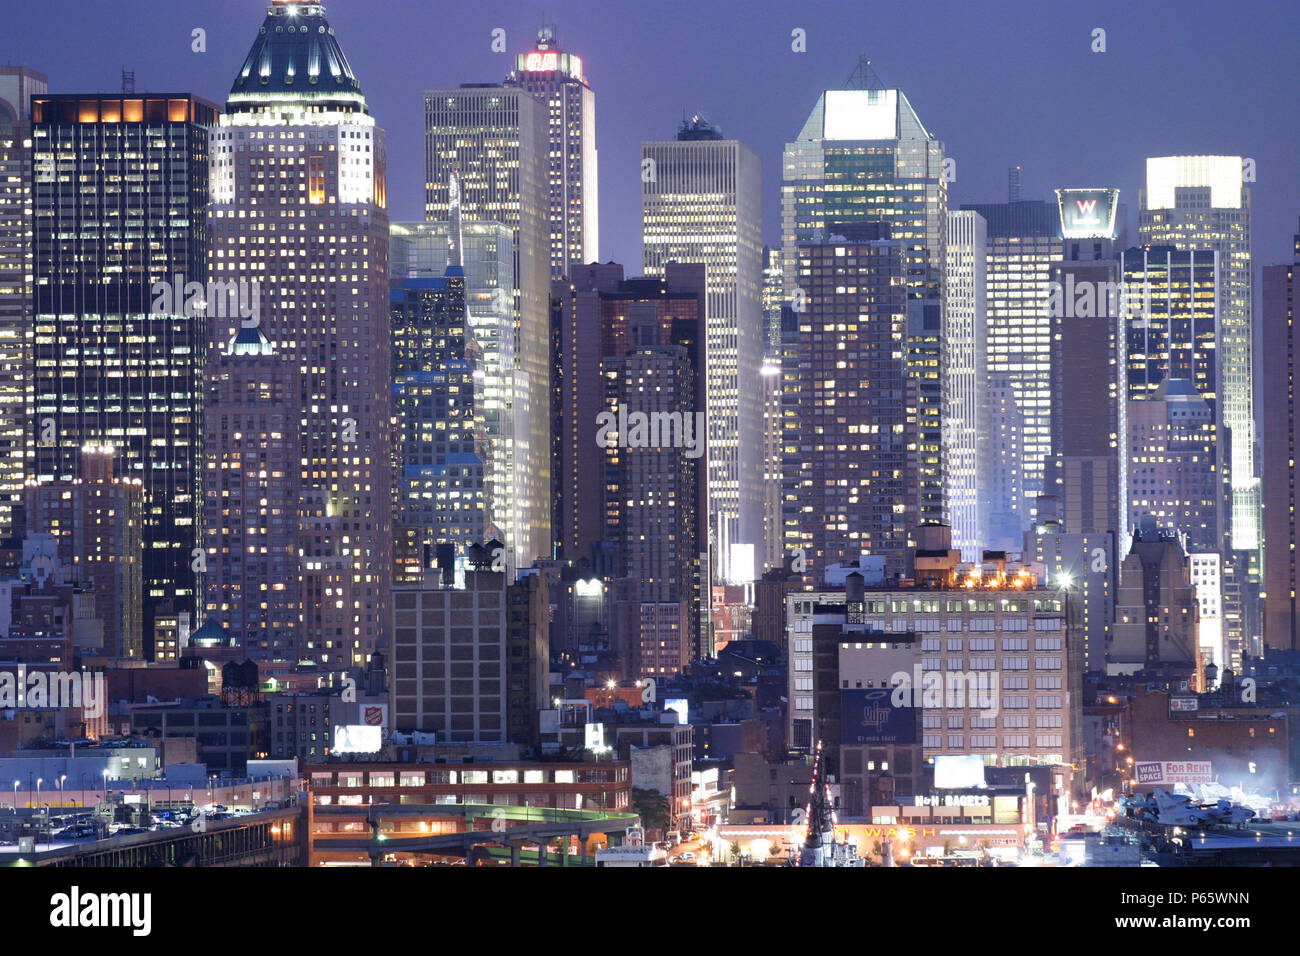 La economía de Estados Unidos, la ciudad de Nueva York: vista de los rascacielos de Manhattan Foto de stock